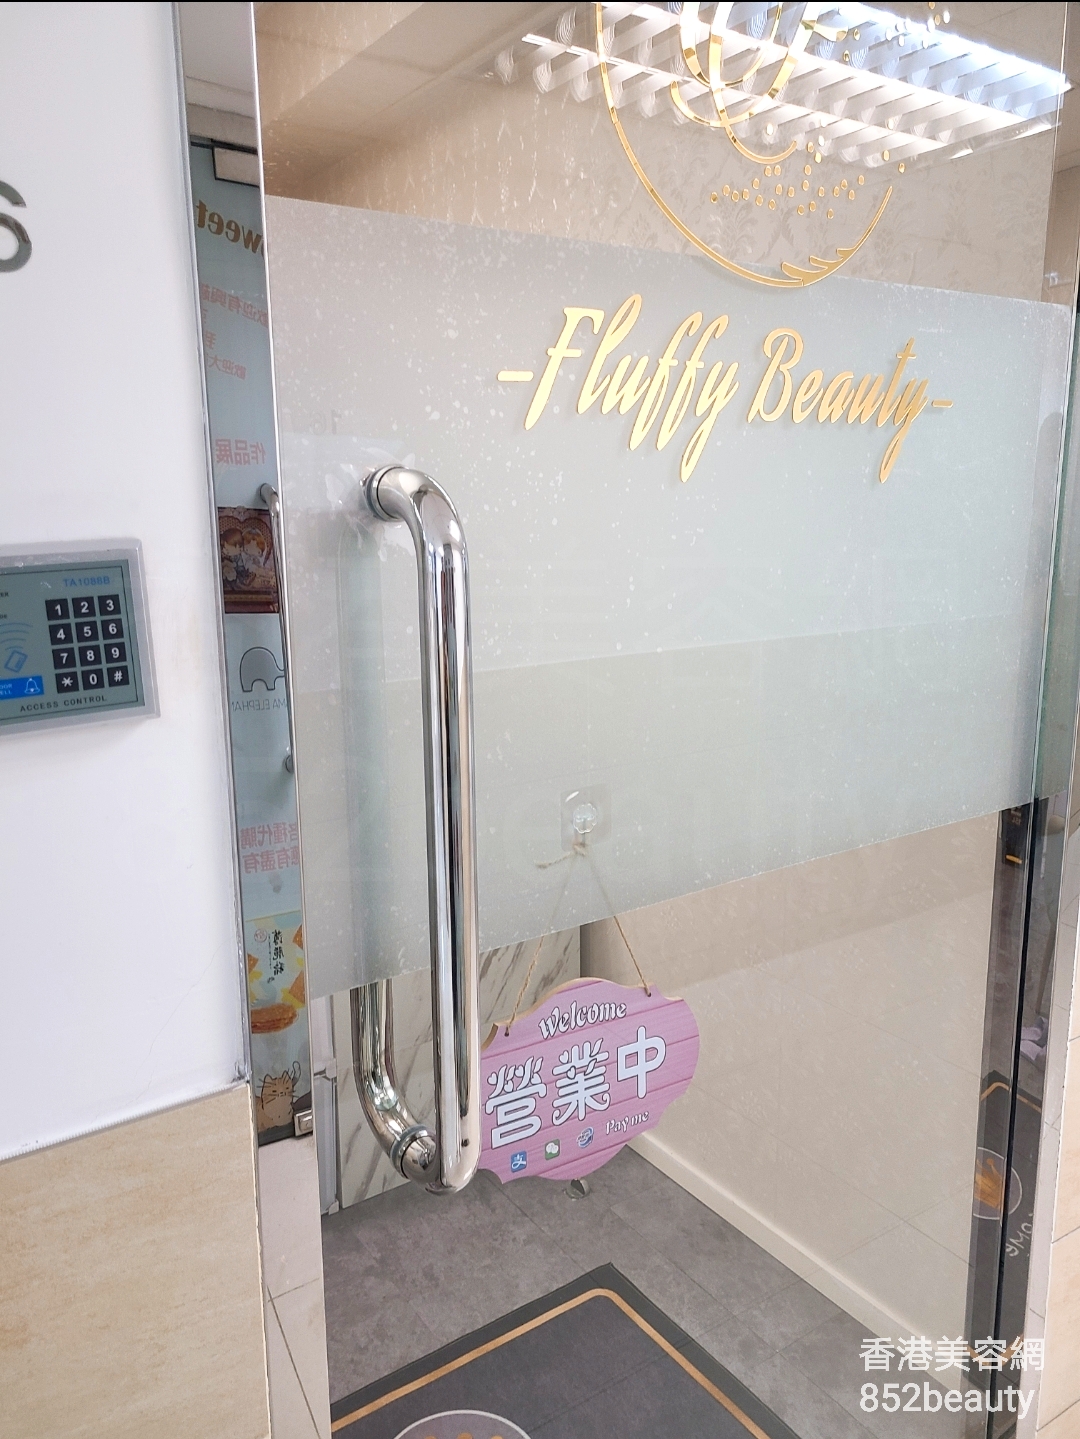 最新美容院 / 美容师Fluffy Beauty @ 香港美容网 Hong Kong Beauty Salon